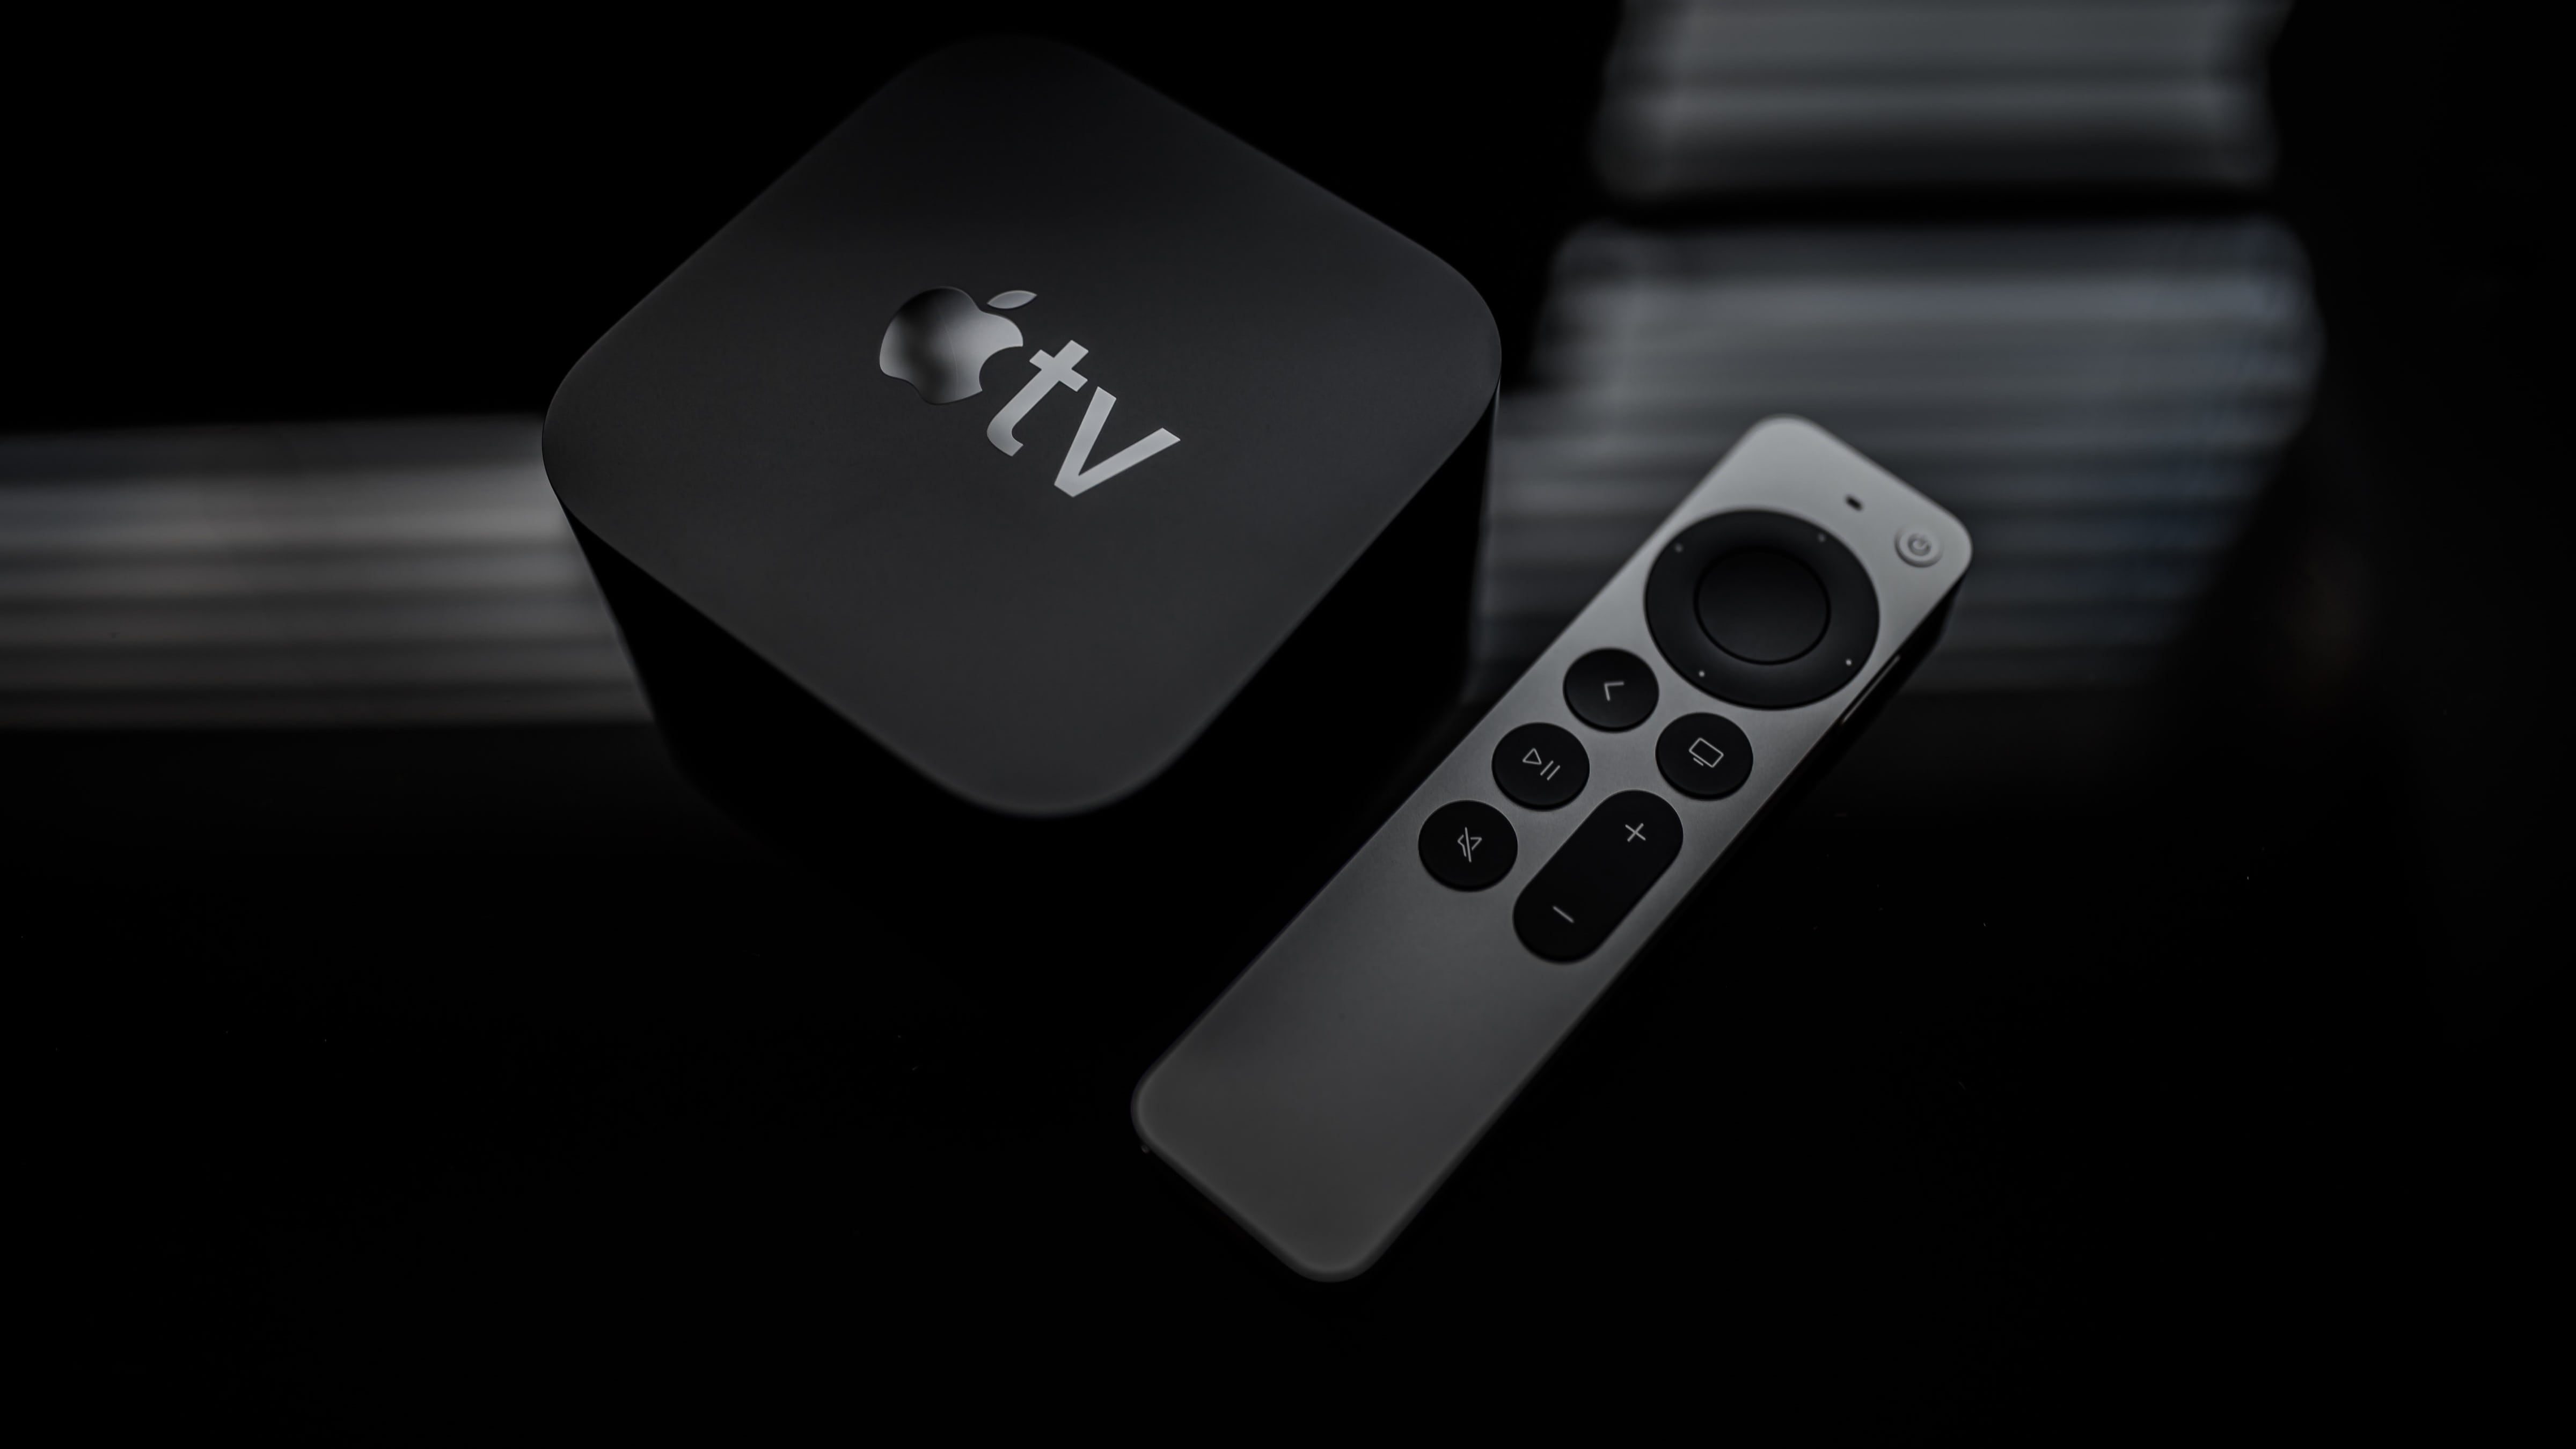 عرض بزاوية من أعلى لأسفل لجهاز Apple TV 4K من الجيل الثاني جنبًا إلى جنب مع Siri Remote محدث ، على خلفية مظلمة